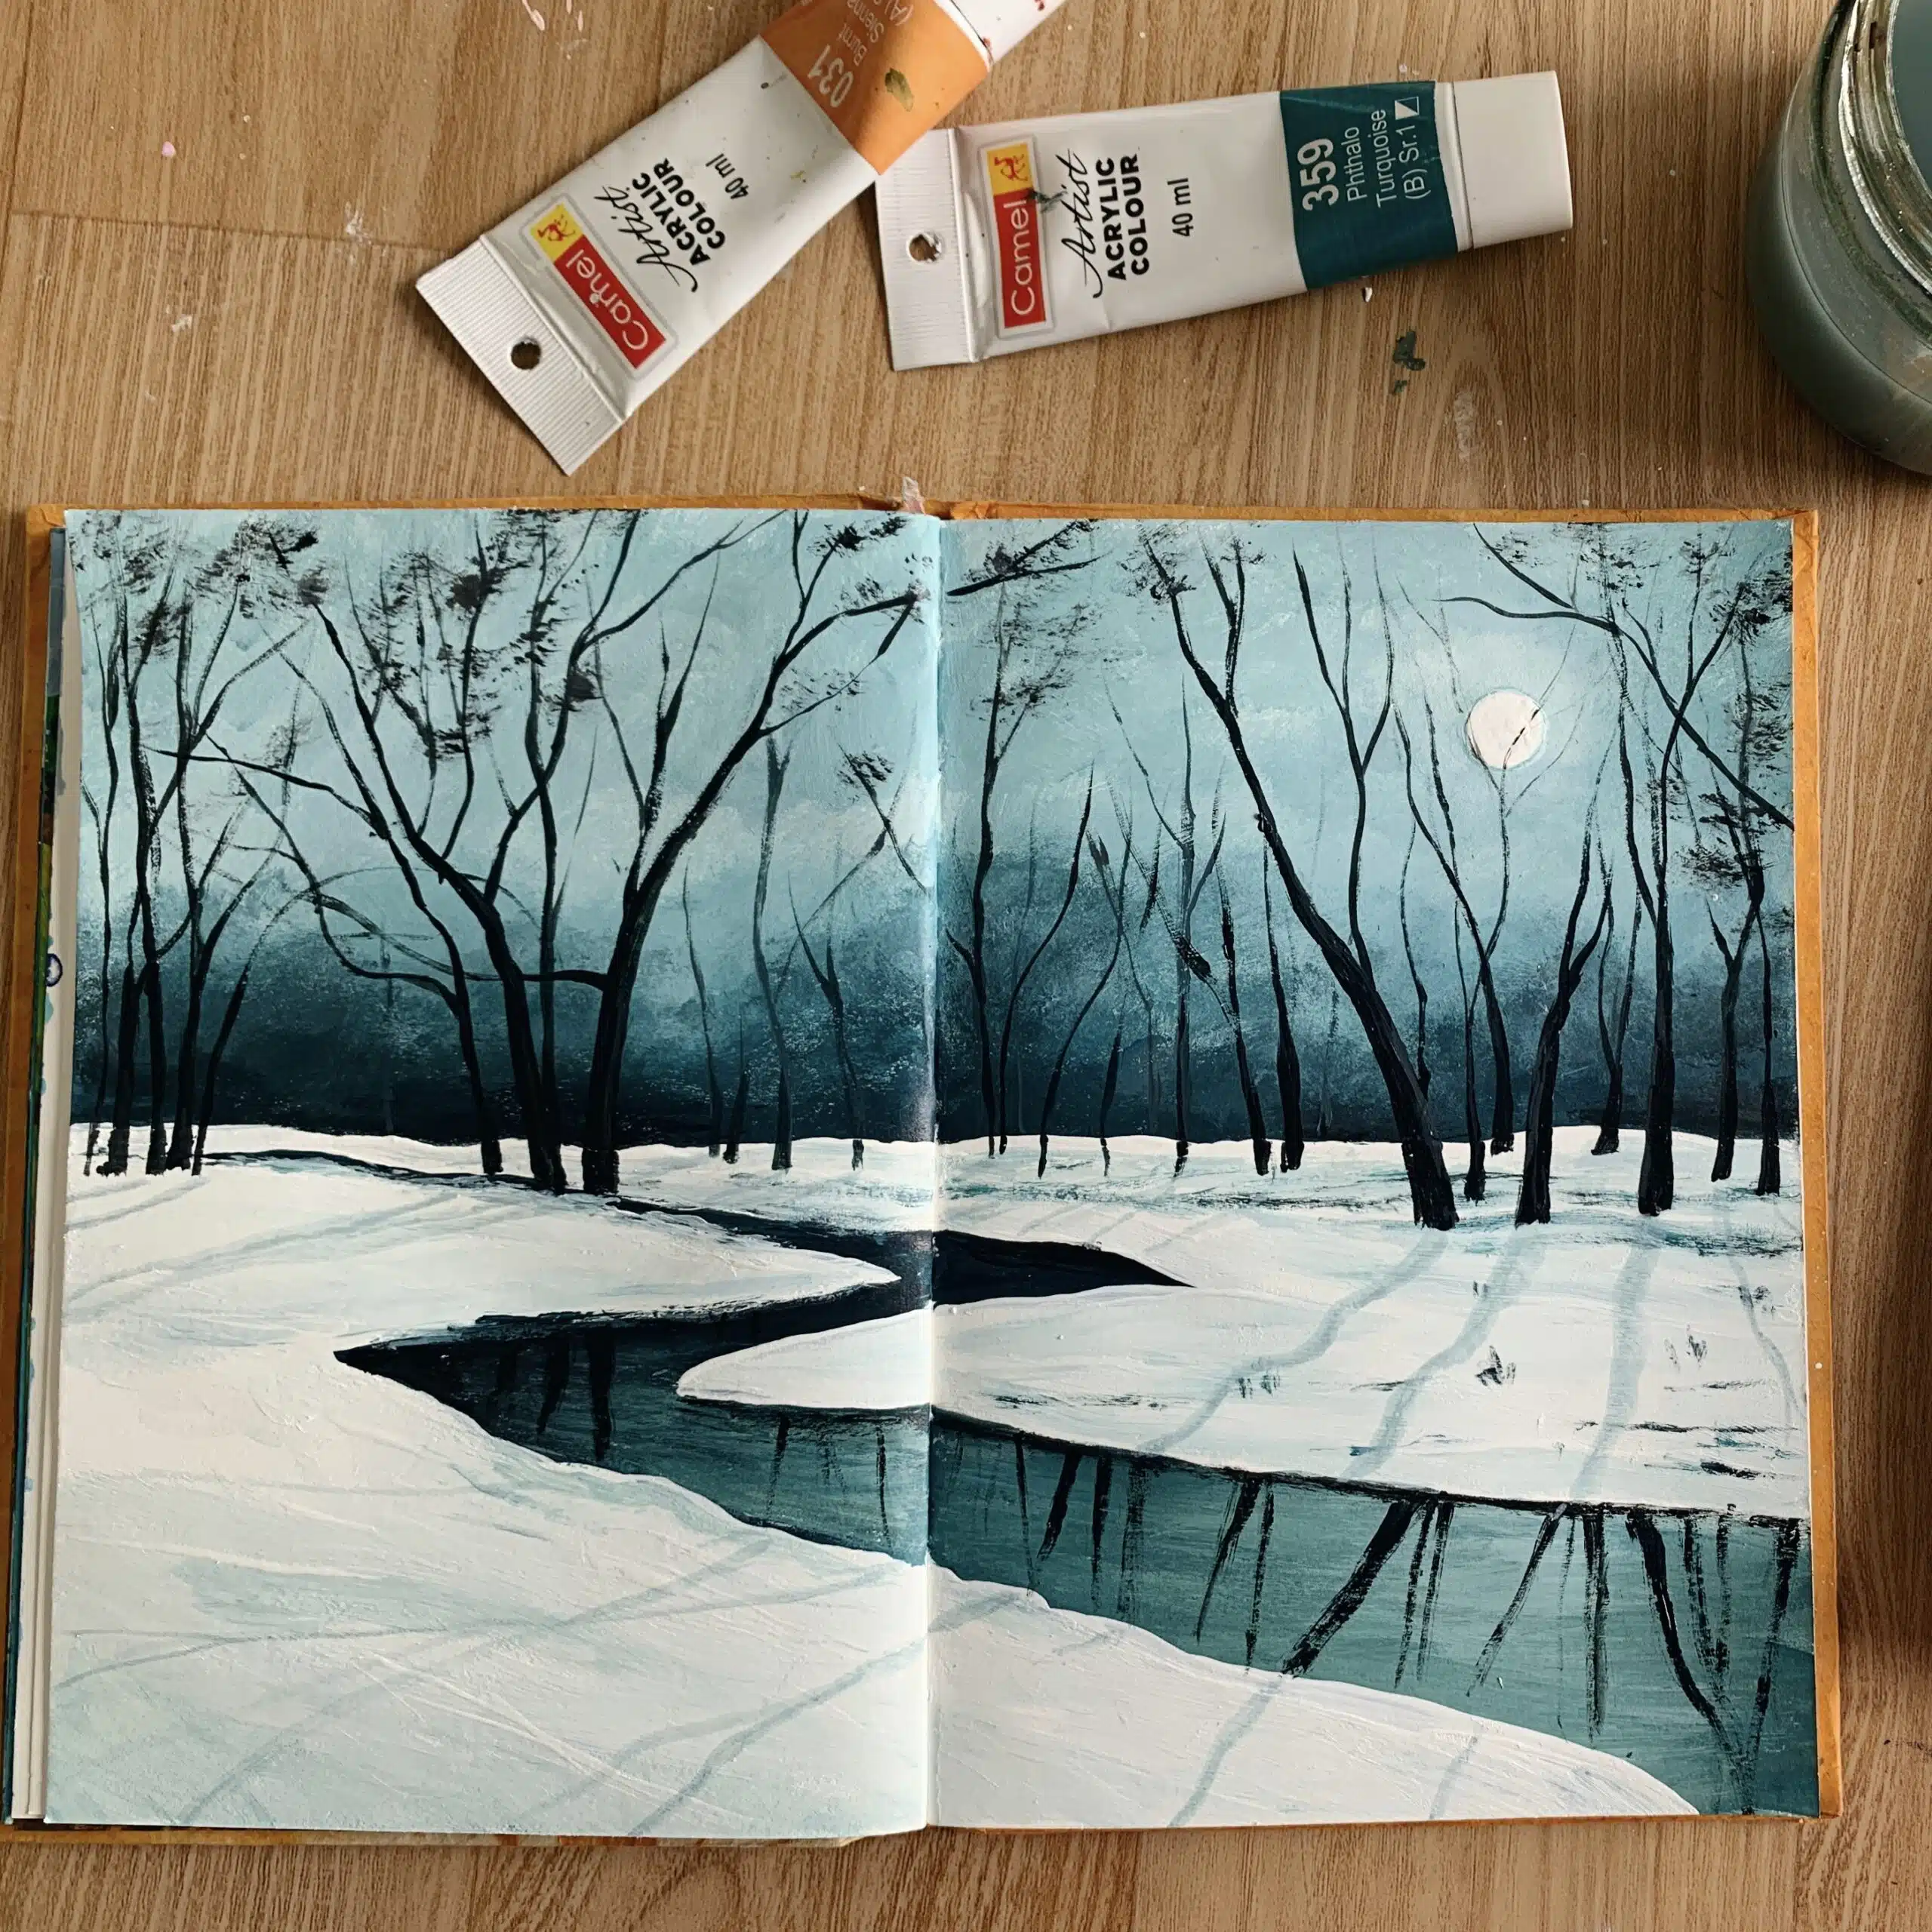 Easy-sketchbook-painting-ideas-acrylic-painting-in-art-journal-tutorial-for-beginners-step-by-step-debasree-dey-art-1101